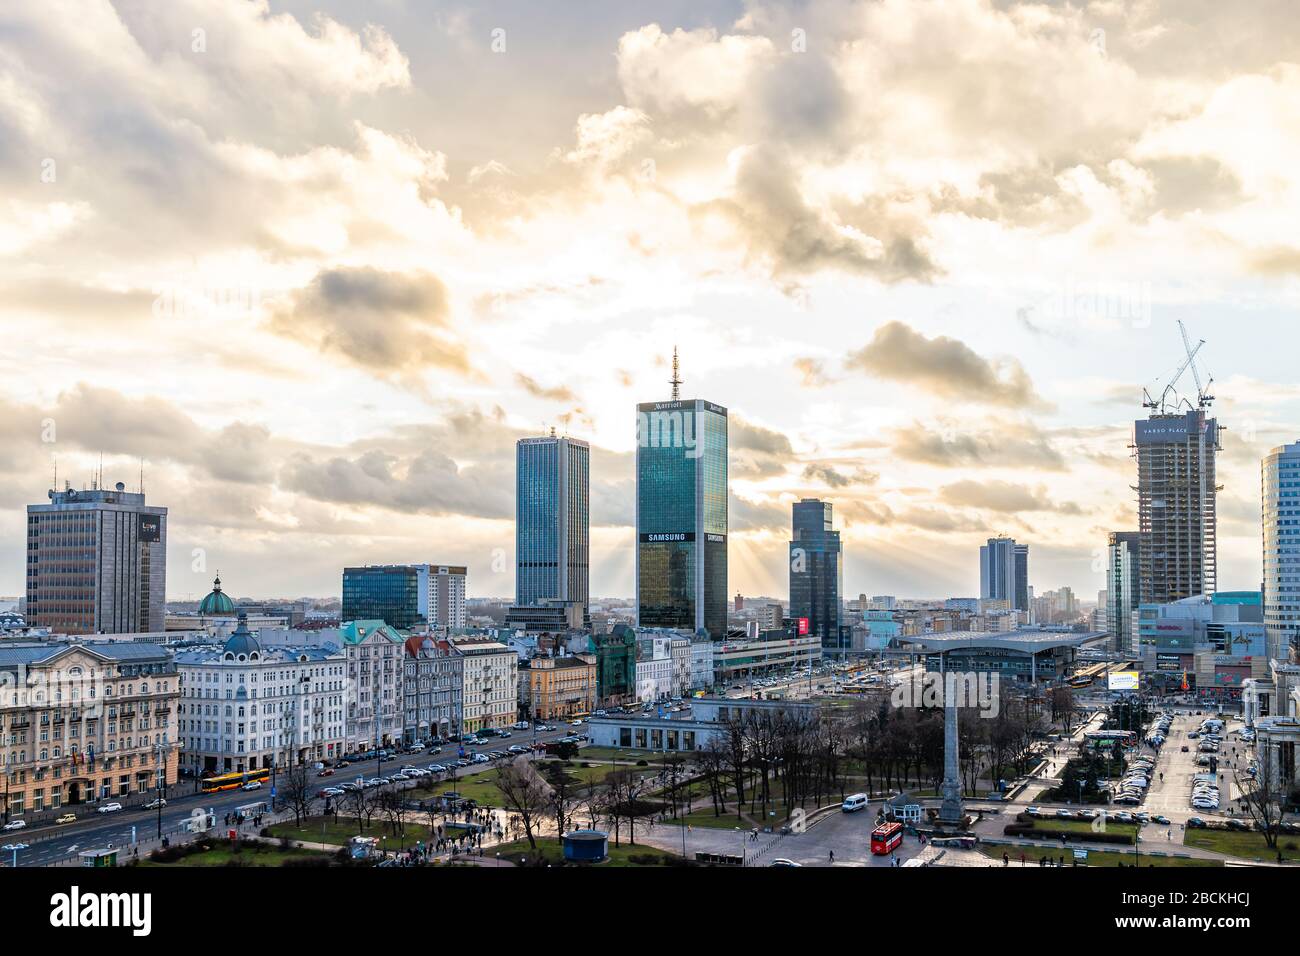 Varsavia, Polonia - 22 gennaio 2020: Antenna ad alto angolo sopra la vista panoramica dello skyline cittadino di Varsavia con la stazione ferroviaria centralna e il cartello Samsung Foto Stock